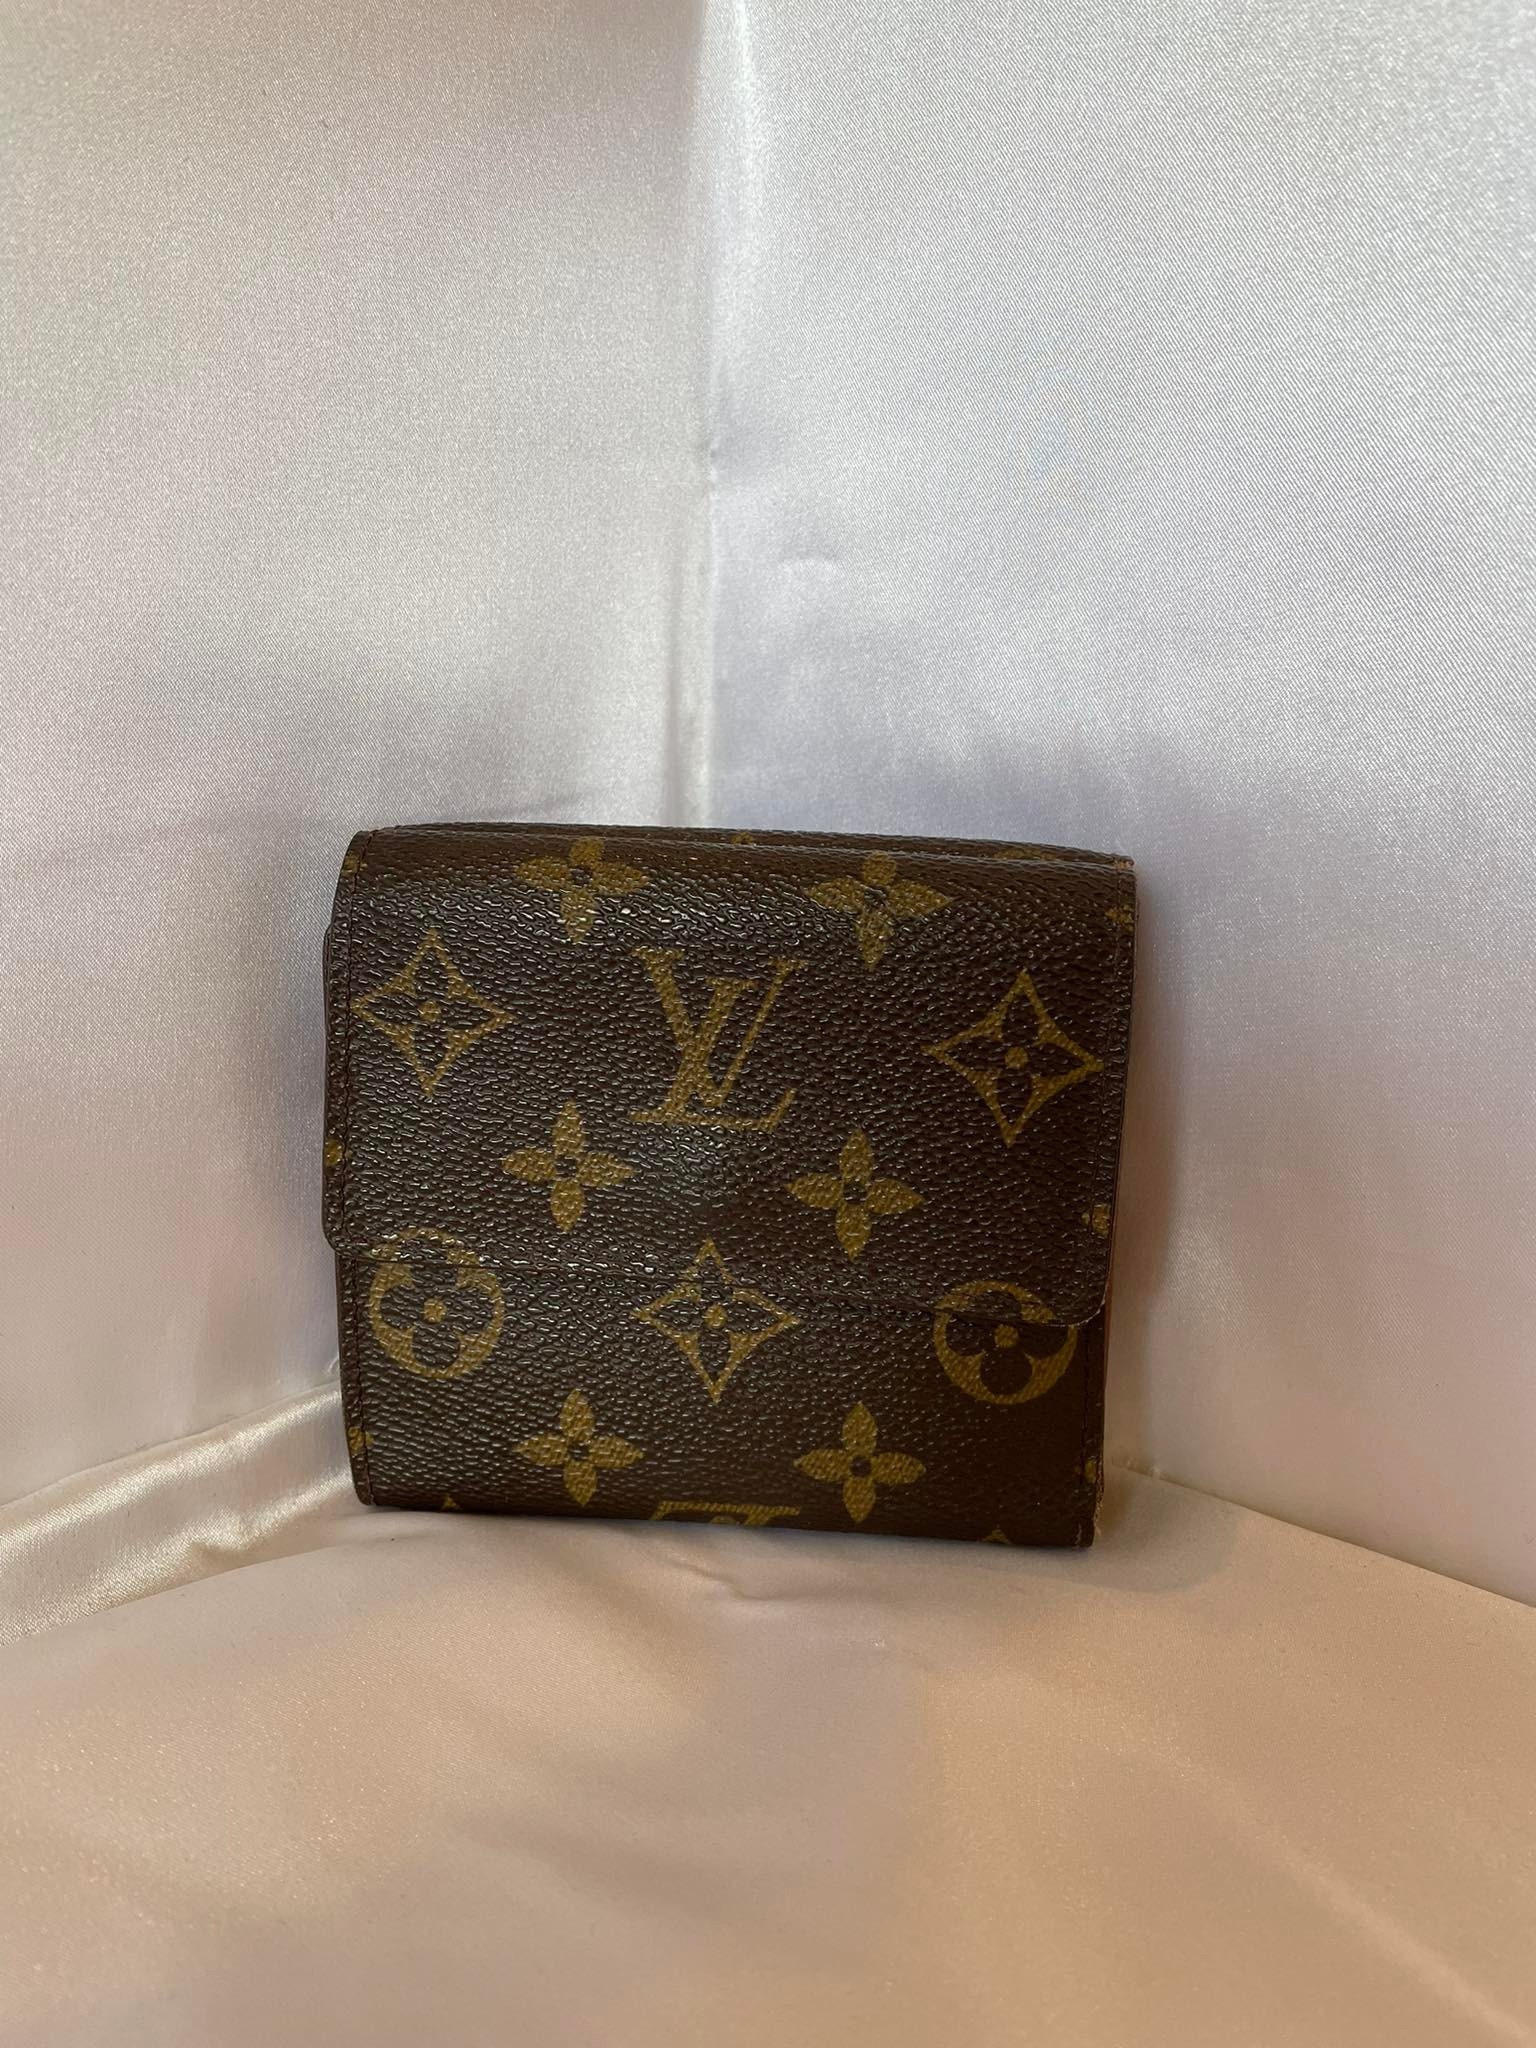 Louis Vuitton, Bags, Louis Vuitton Authentic Monogram Portefeiulle Elise  Trifold Wallet